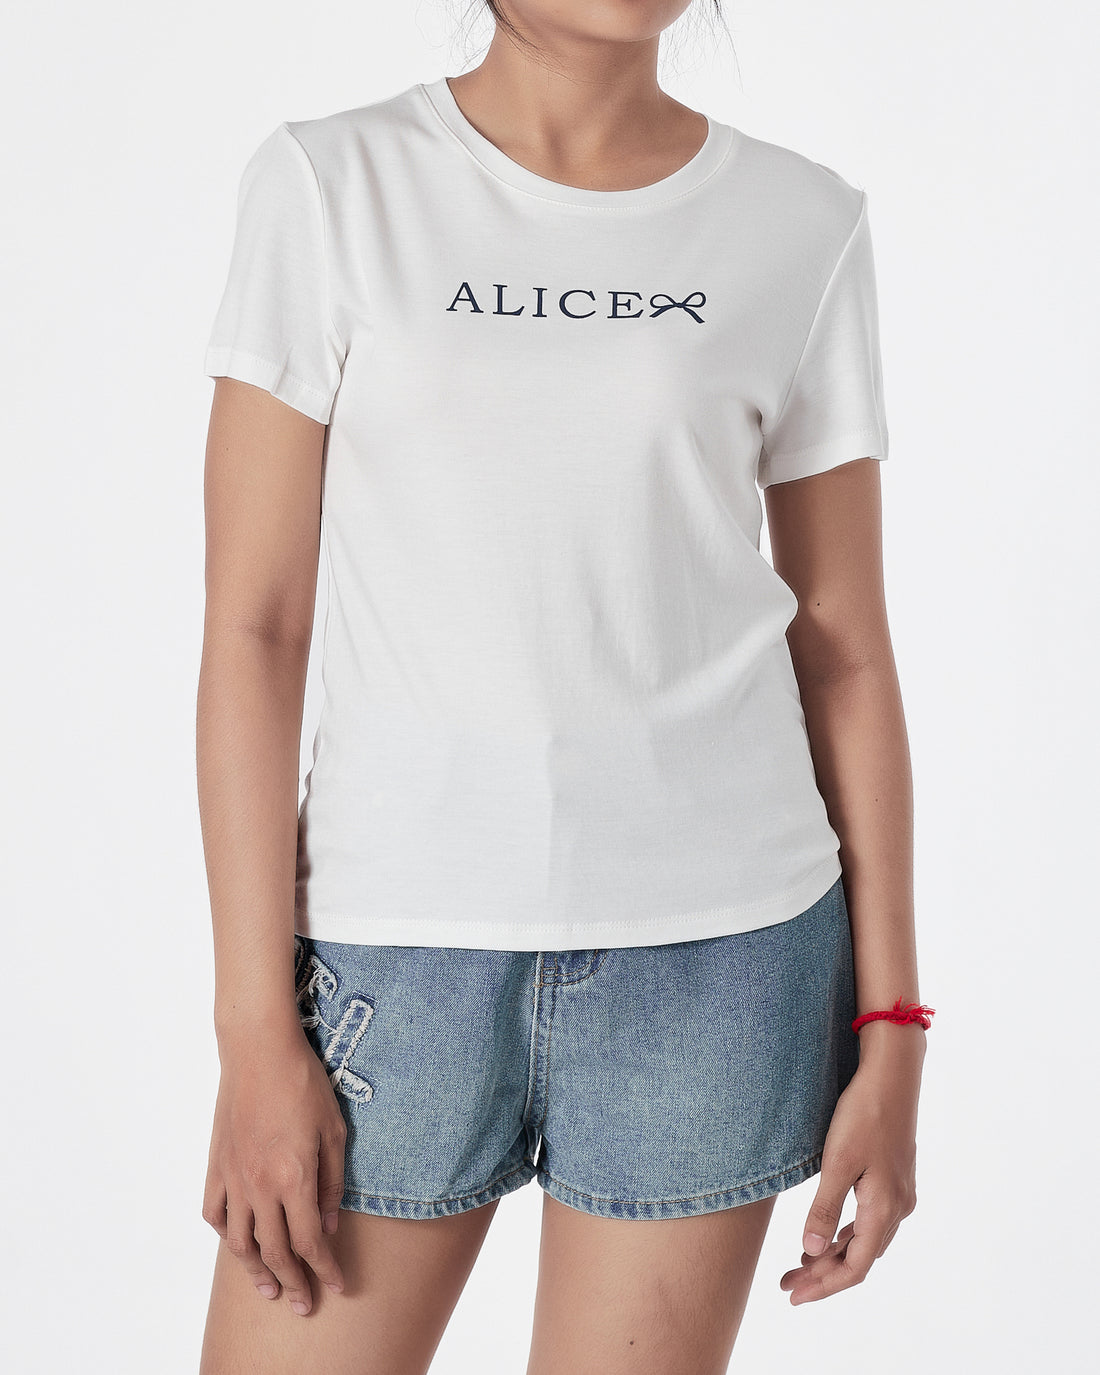 ALICE Lady White T-Shirt 12.90